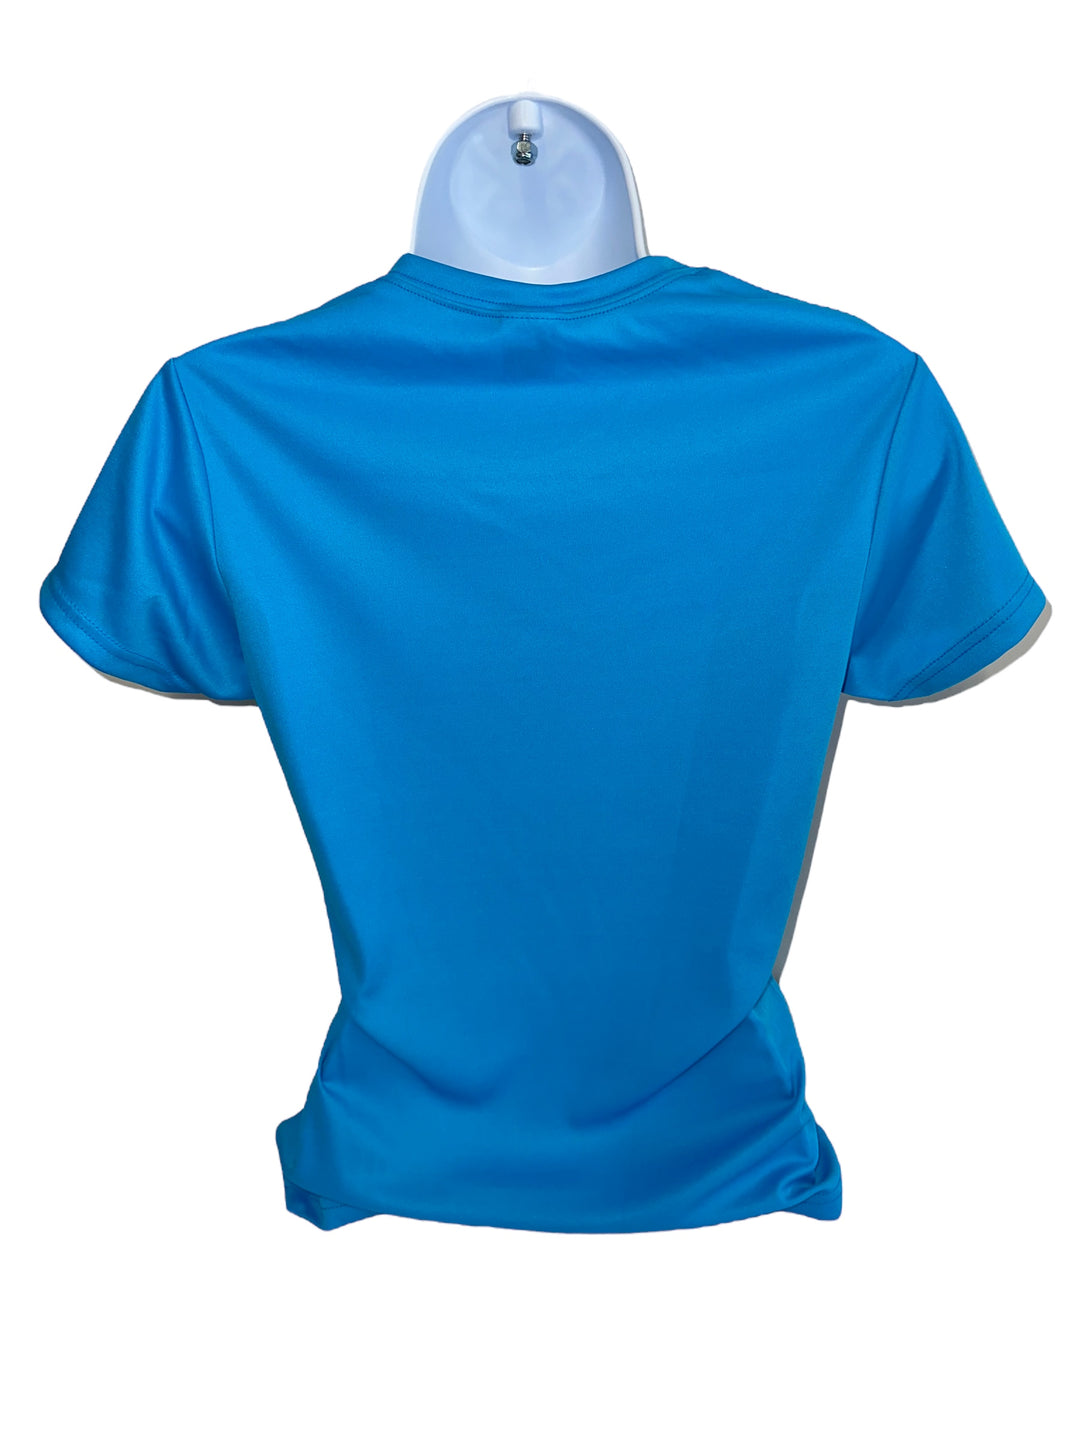 Women's C2 Sport Performance Short Sleeve Shirt